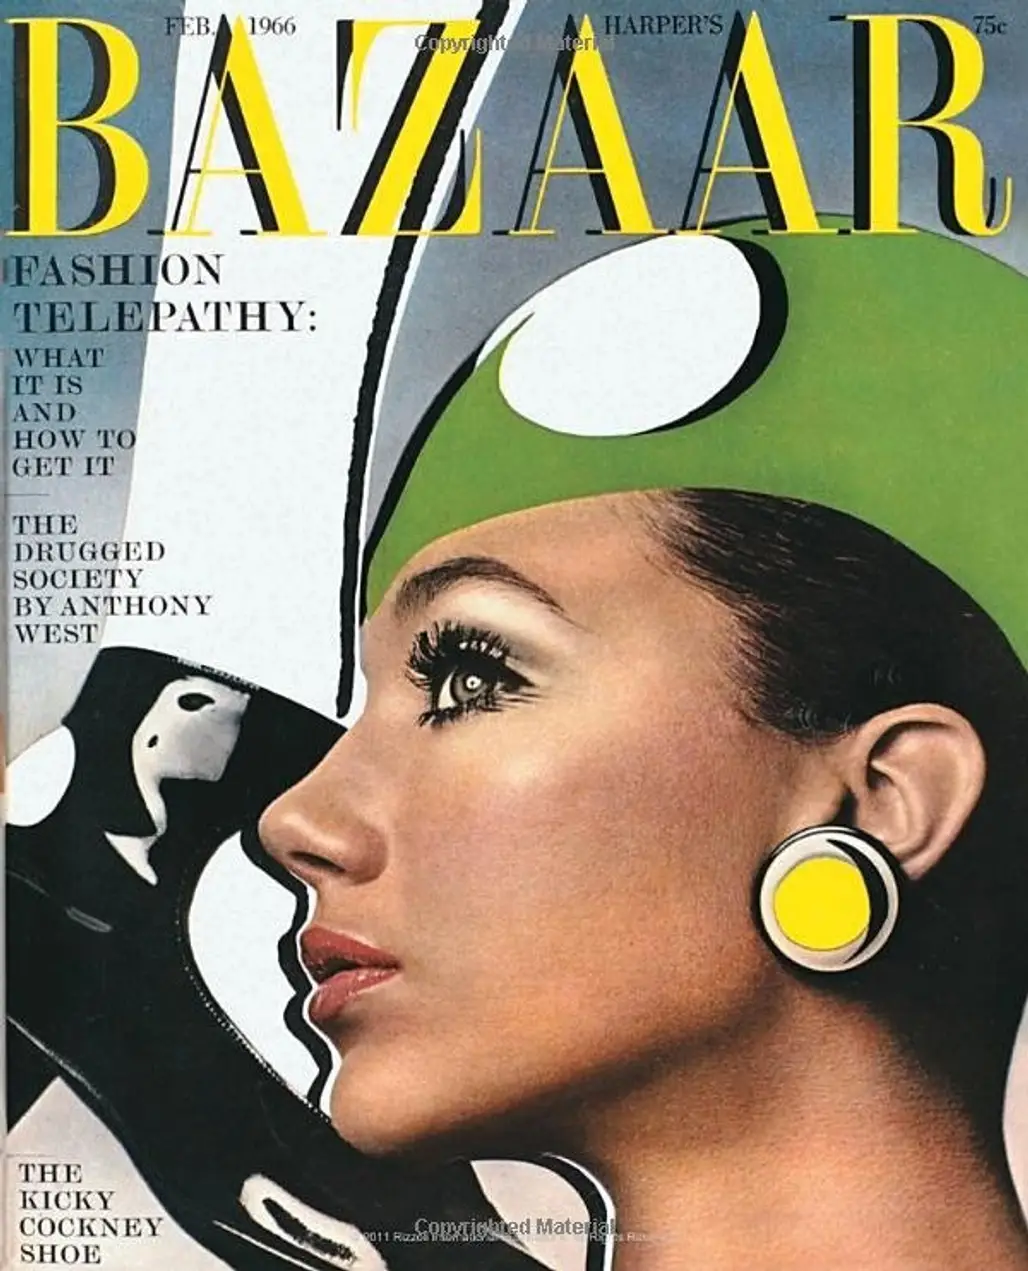 Harper's Bazaar, Feb 1966